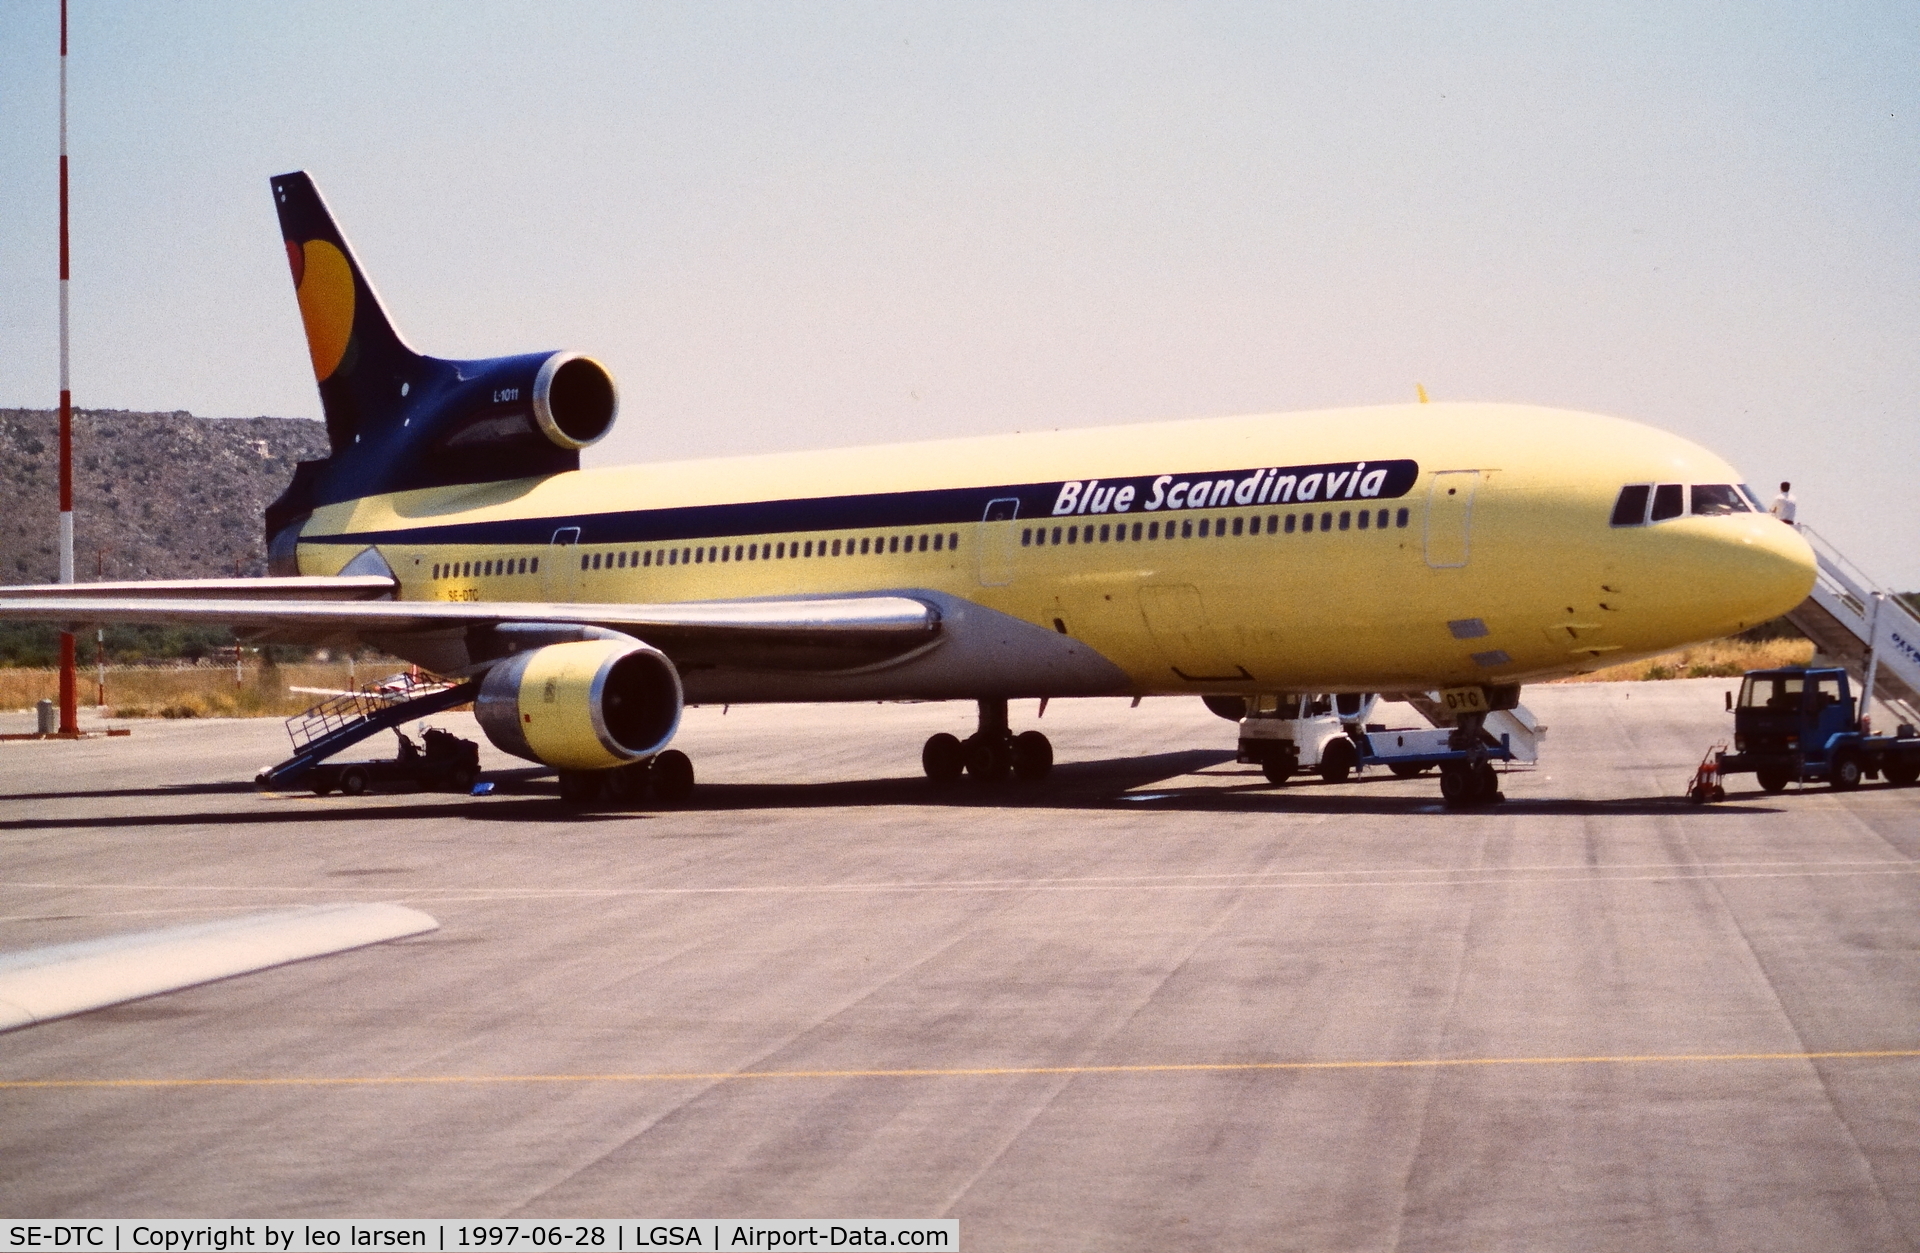 SE-DTC, 1973 Lockheed L-1011-385-1 TriStar 1 C/N 193A-1050, Chania 28.6.1997